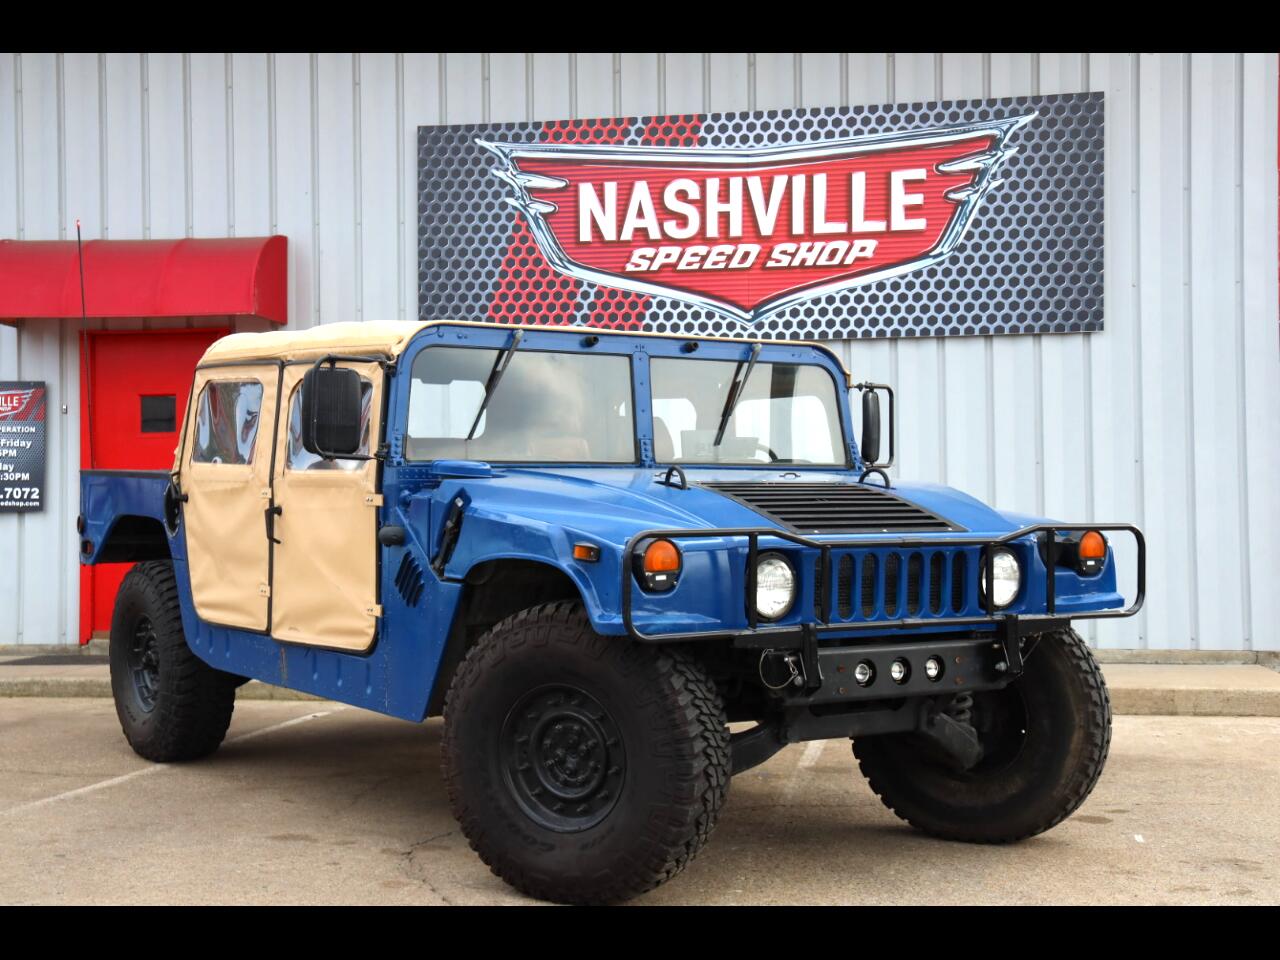 Used 1989 AM General Hummer Sold in Nashville TN 37027 Nashville Speed Shop